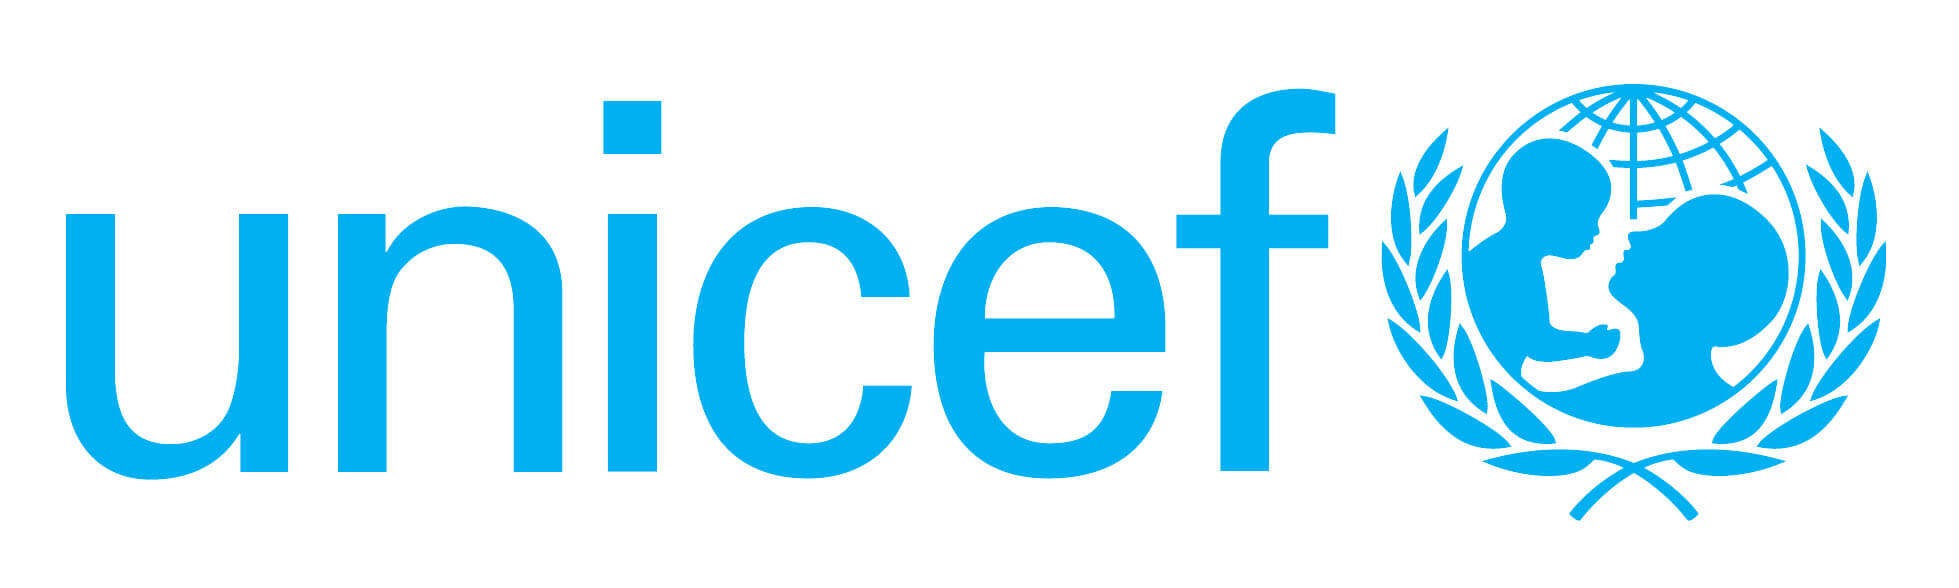 Unicef Logo 4